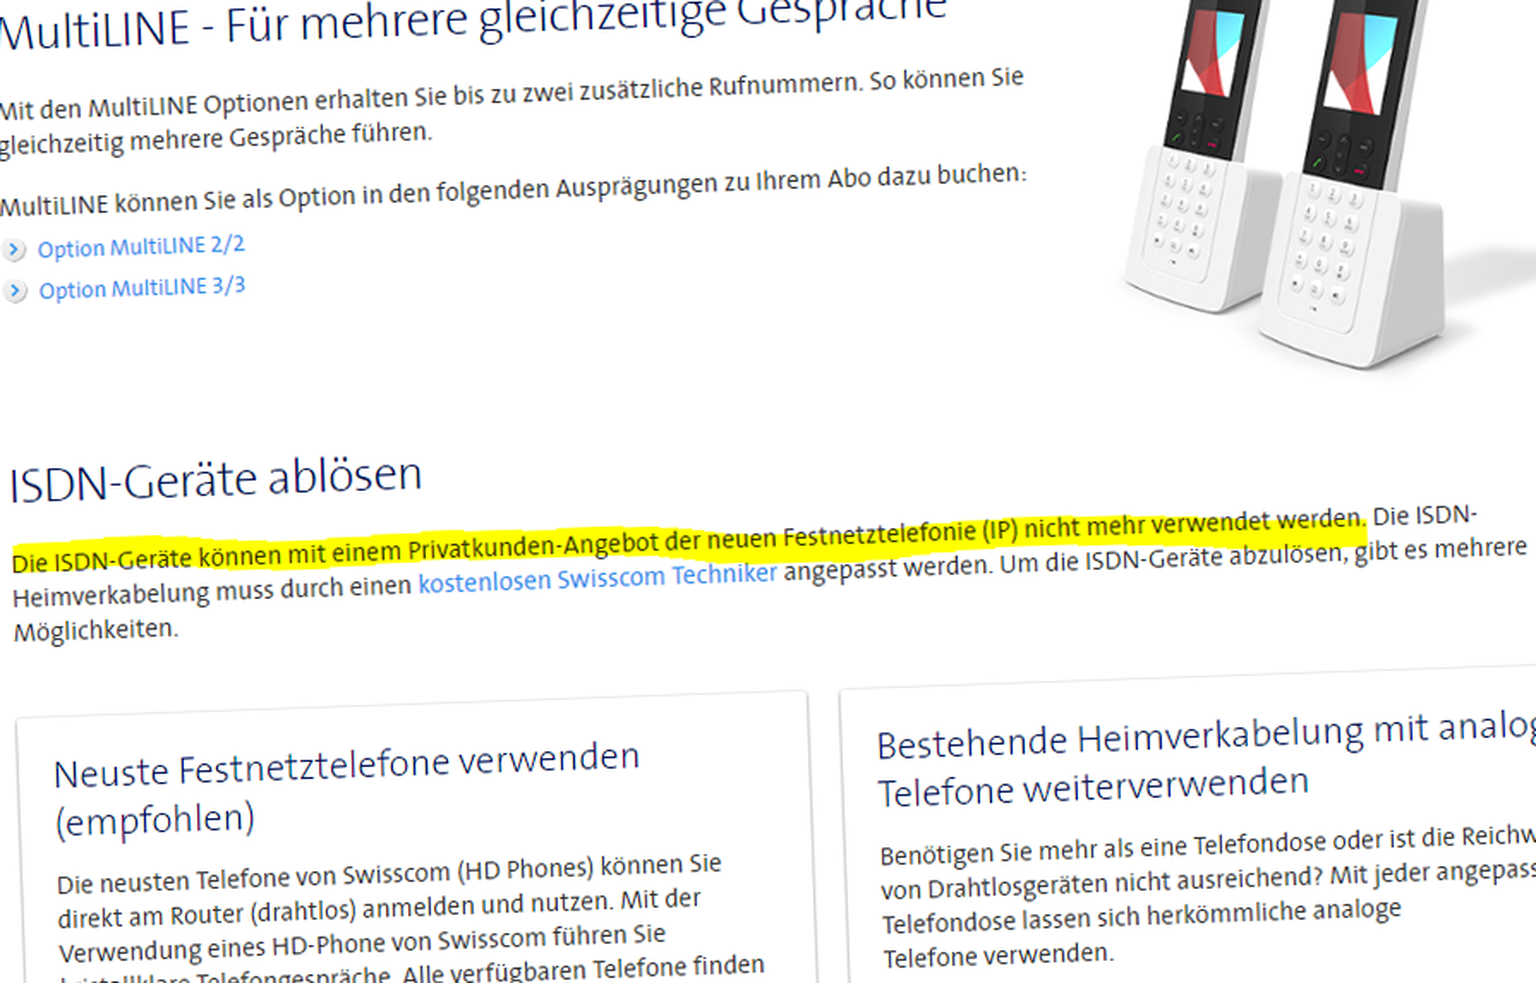 Swisscom behauptet auf ihrer Webseite, dass alte ISDN-Telefone ab 2018 nicht mehr verwendet werden können. Das ist falsch.